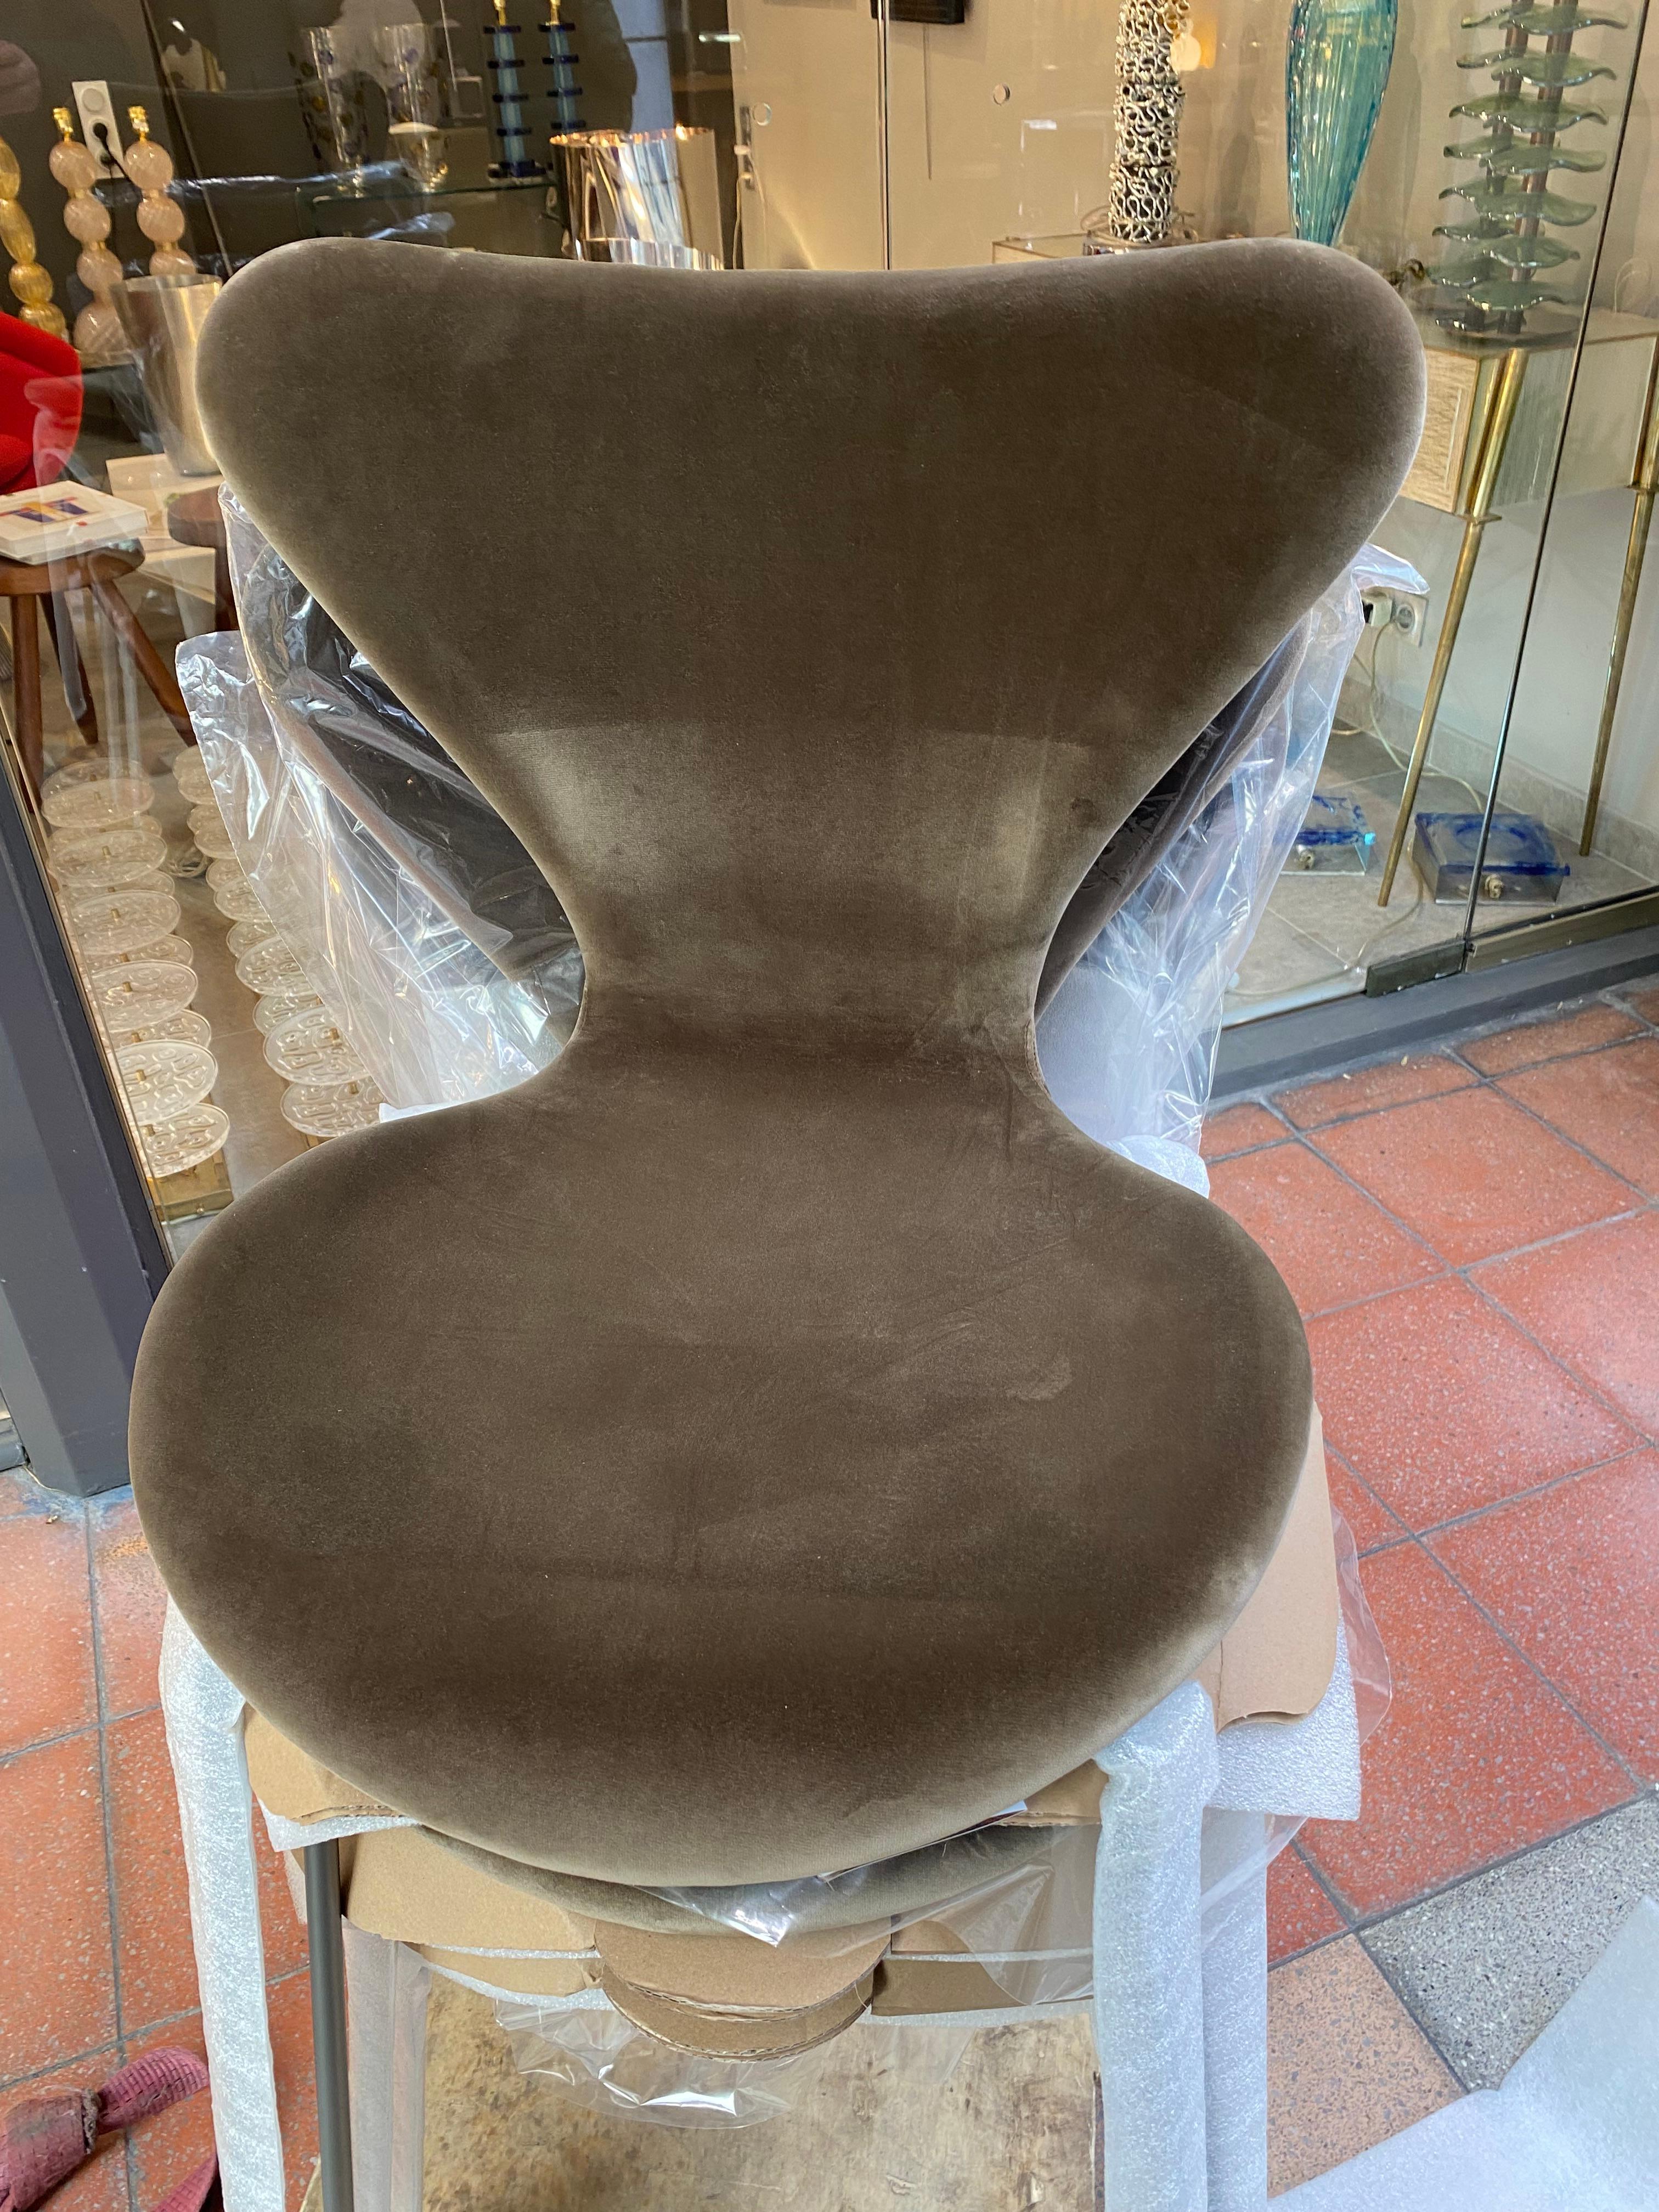 Arne Jacobsen -
Série de 4 Séries 7 chaises
Edition Fritz Hansen
Édition velours
Sièges paddés
100% coton velours
Bronze acier époxy
L 50 x D 52 x H 82 cm
Condit (état neuf)